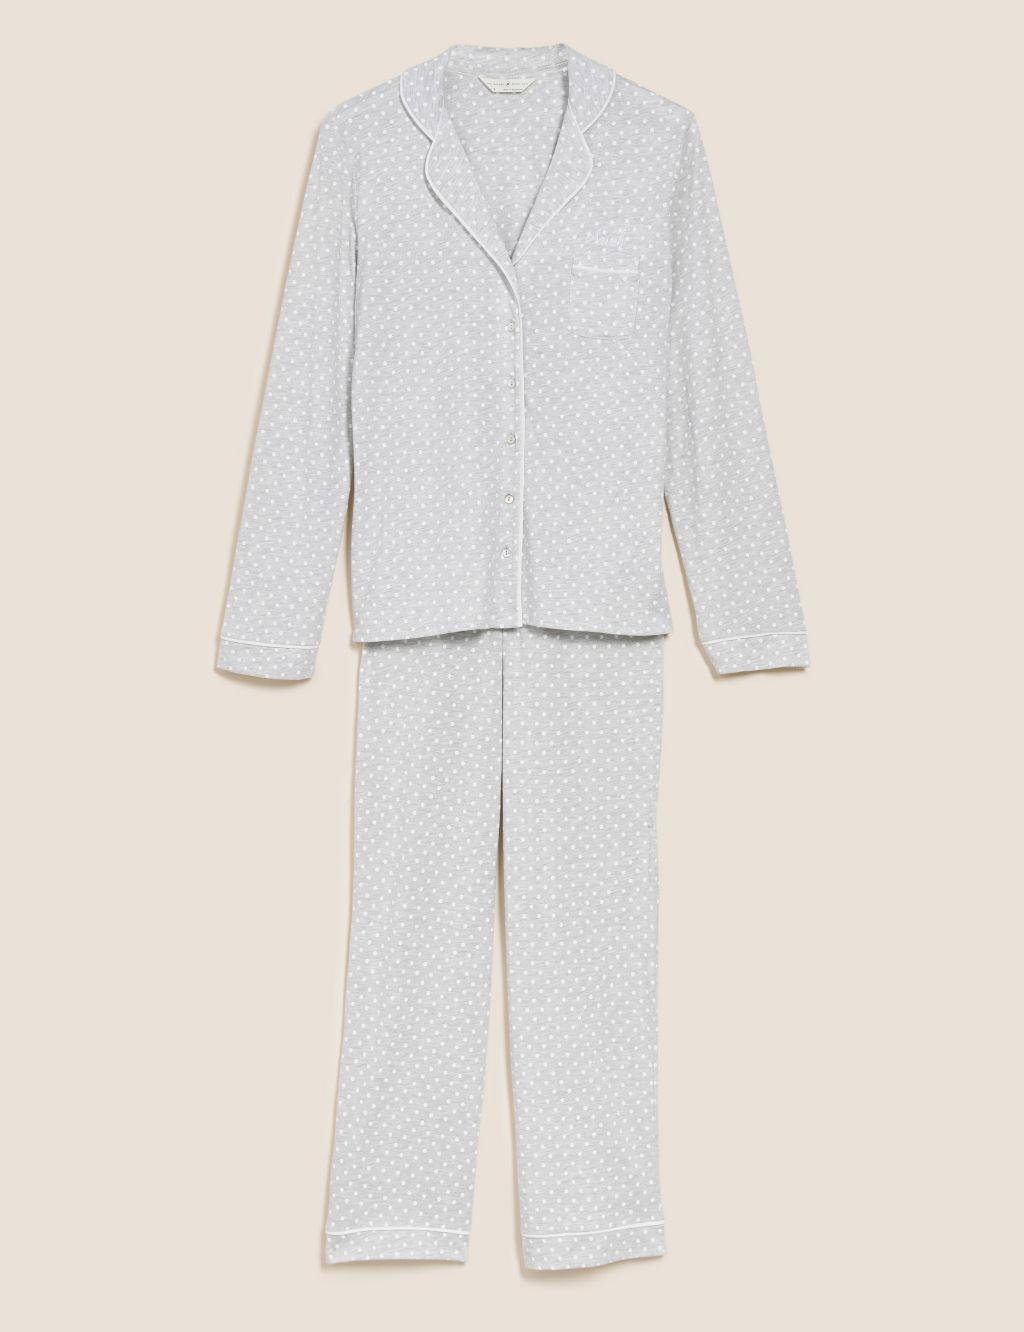 Personalised Women's Cotton Modal Pyjamas image 1